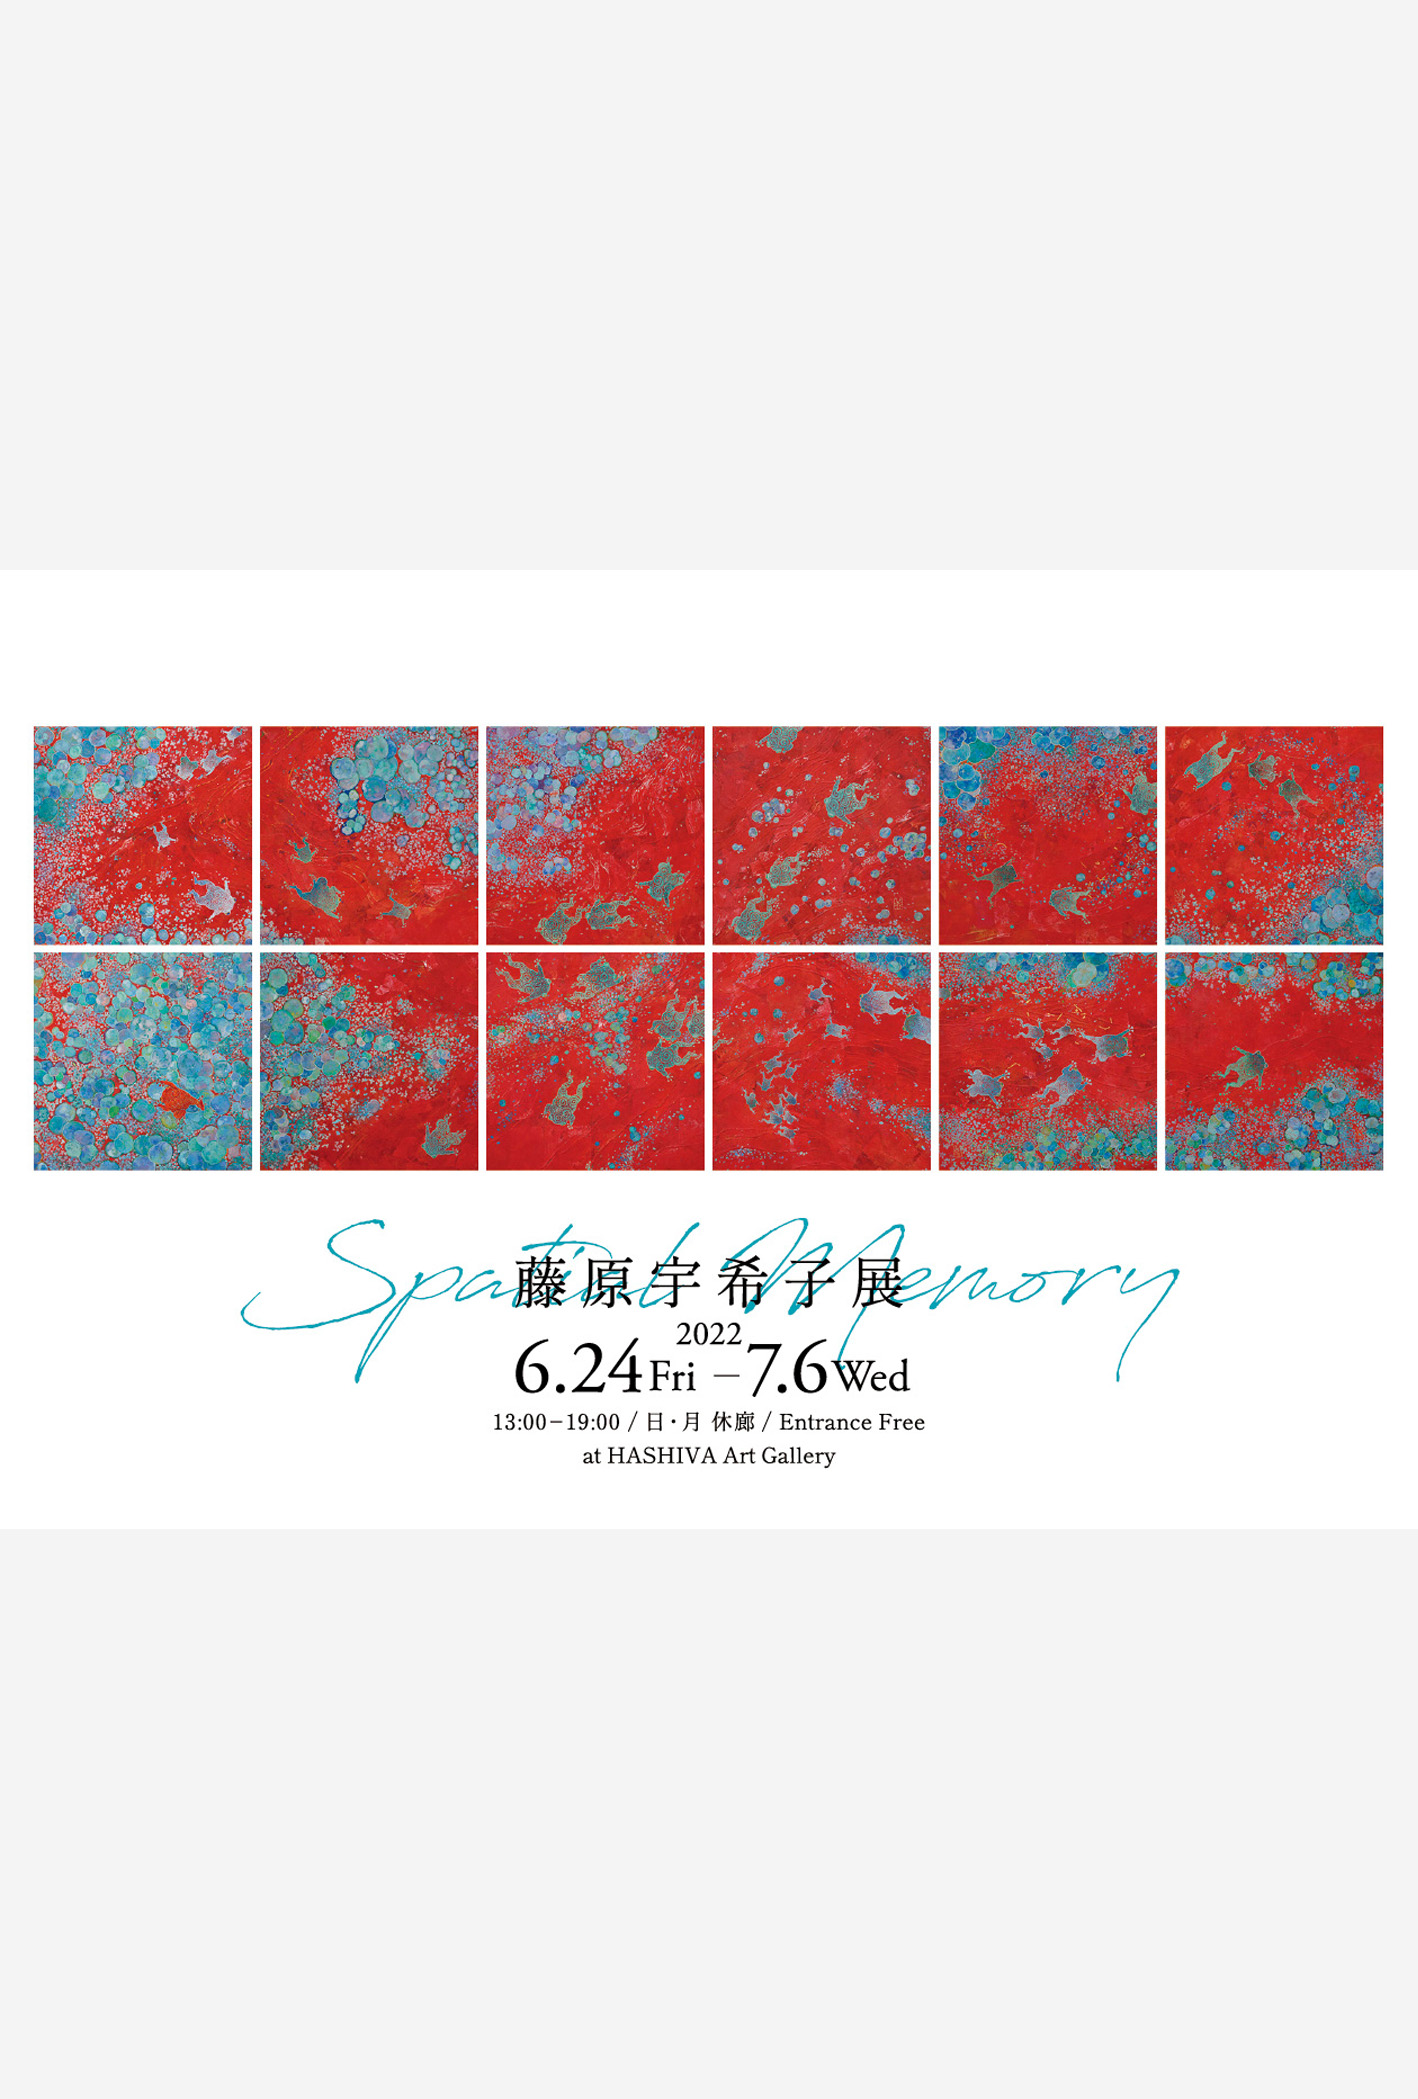 若手日本画家・藤原宇希子の展示会「Spatial Memory」のメインビジュアル